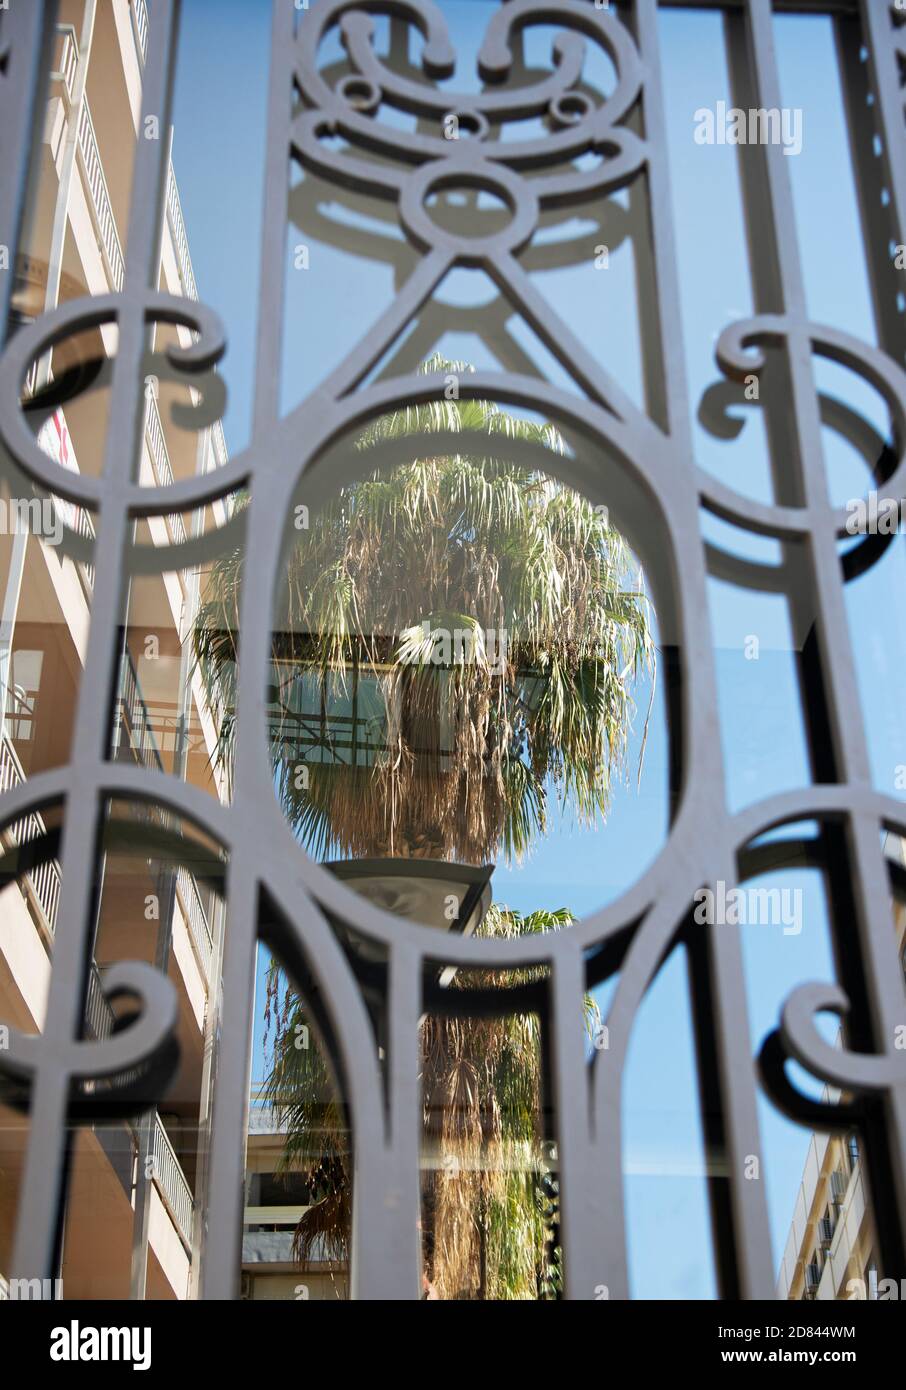 Spiegelung einer Palme auf der Glasscheibe einer Tür mit aufwendig gestalteten Eisenstangen. Konzept: Dekor, Gebäudesicherheit. Stockfoto